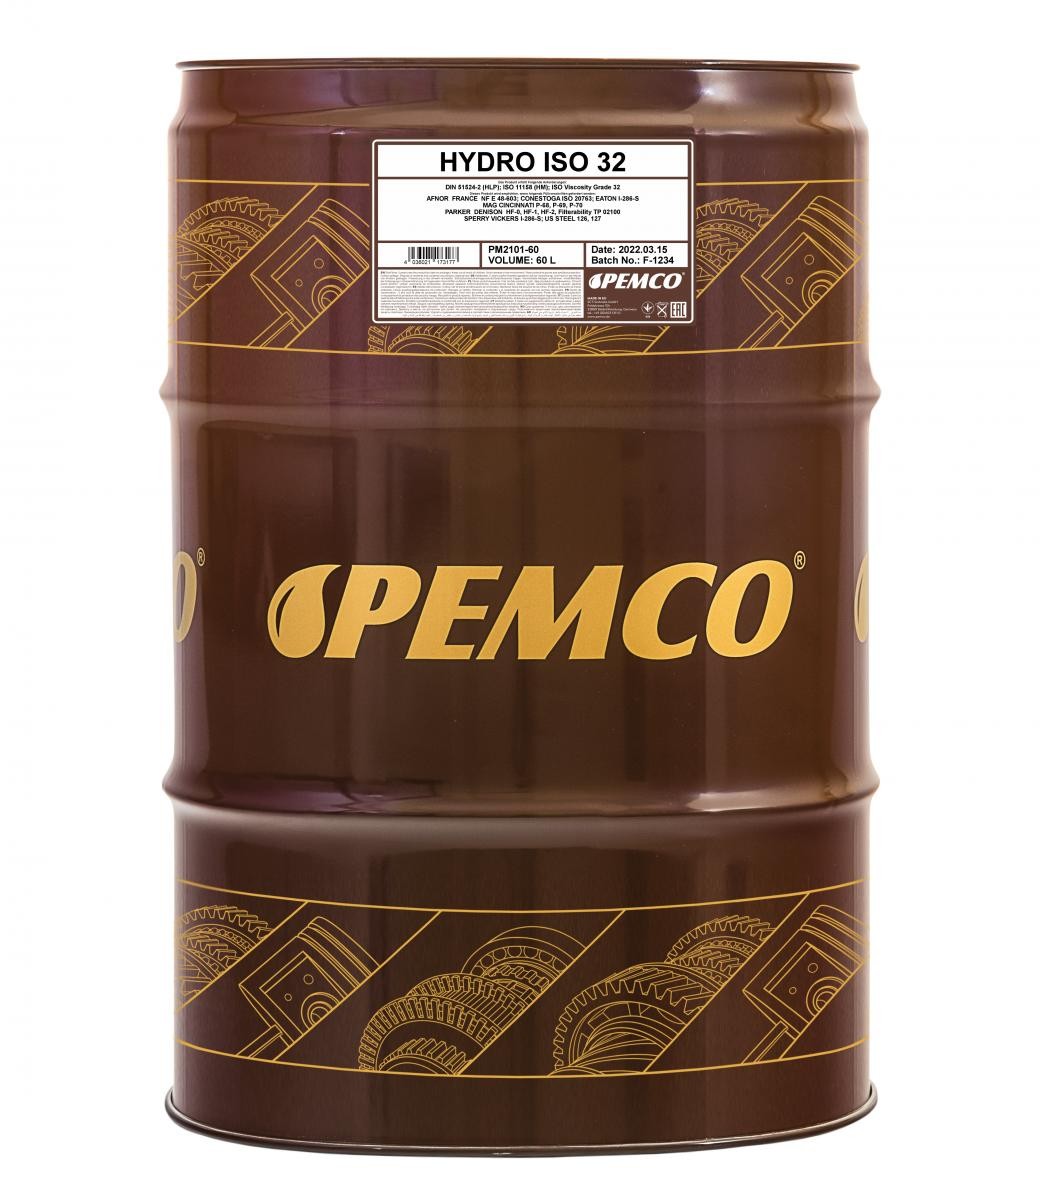 PEMCO Hydro PM2101-60 Hydraulic Oil Capacity: 60l